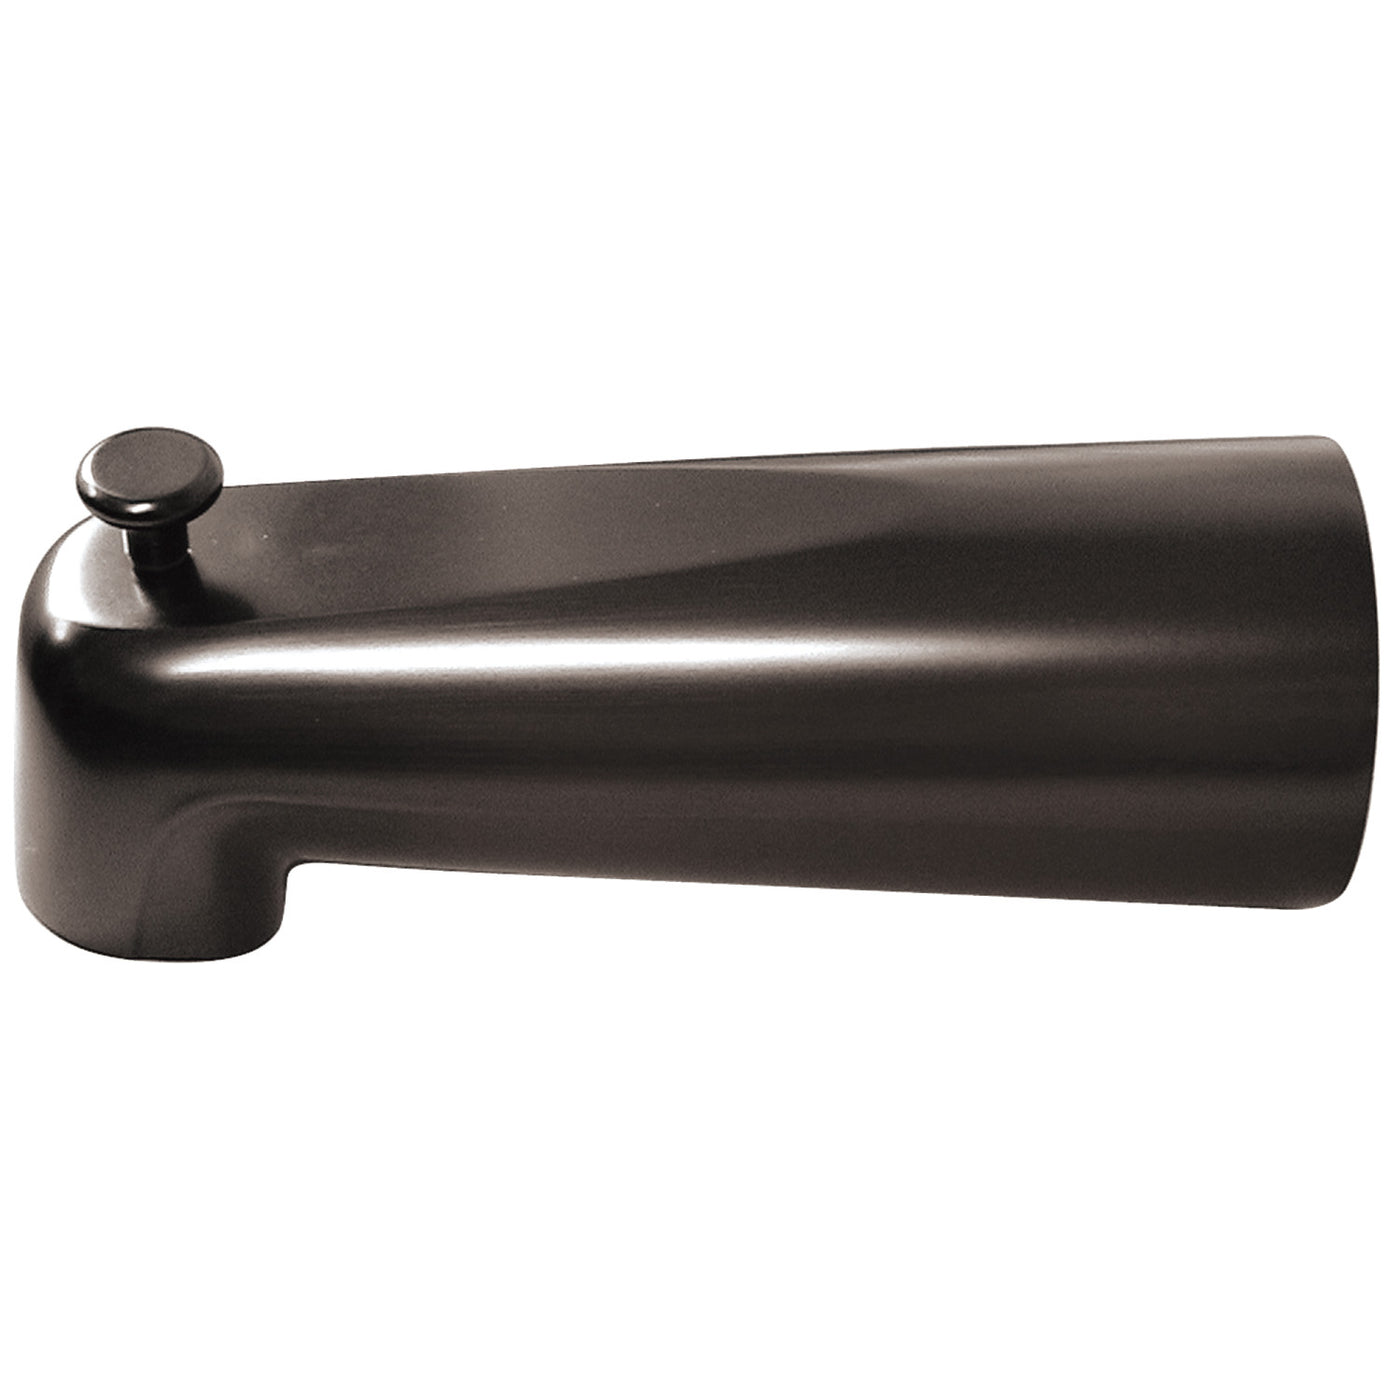 Elements of Design DK1089A5 7-Inch Diverter Tub Spout, Oil Rubbed Bronze